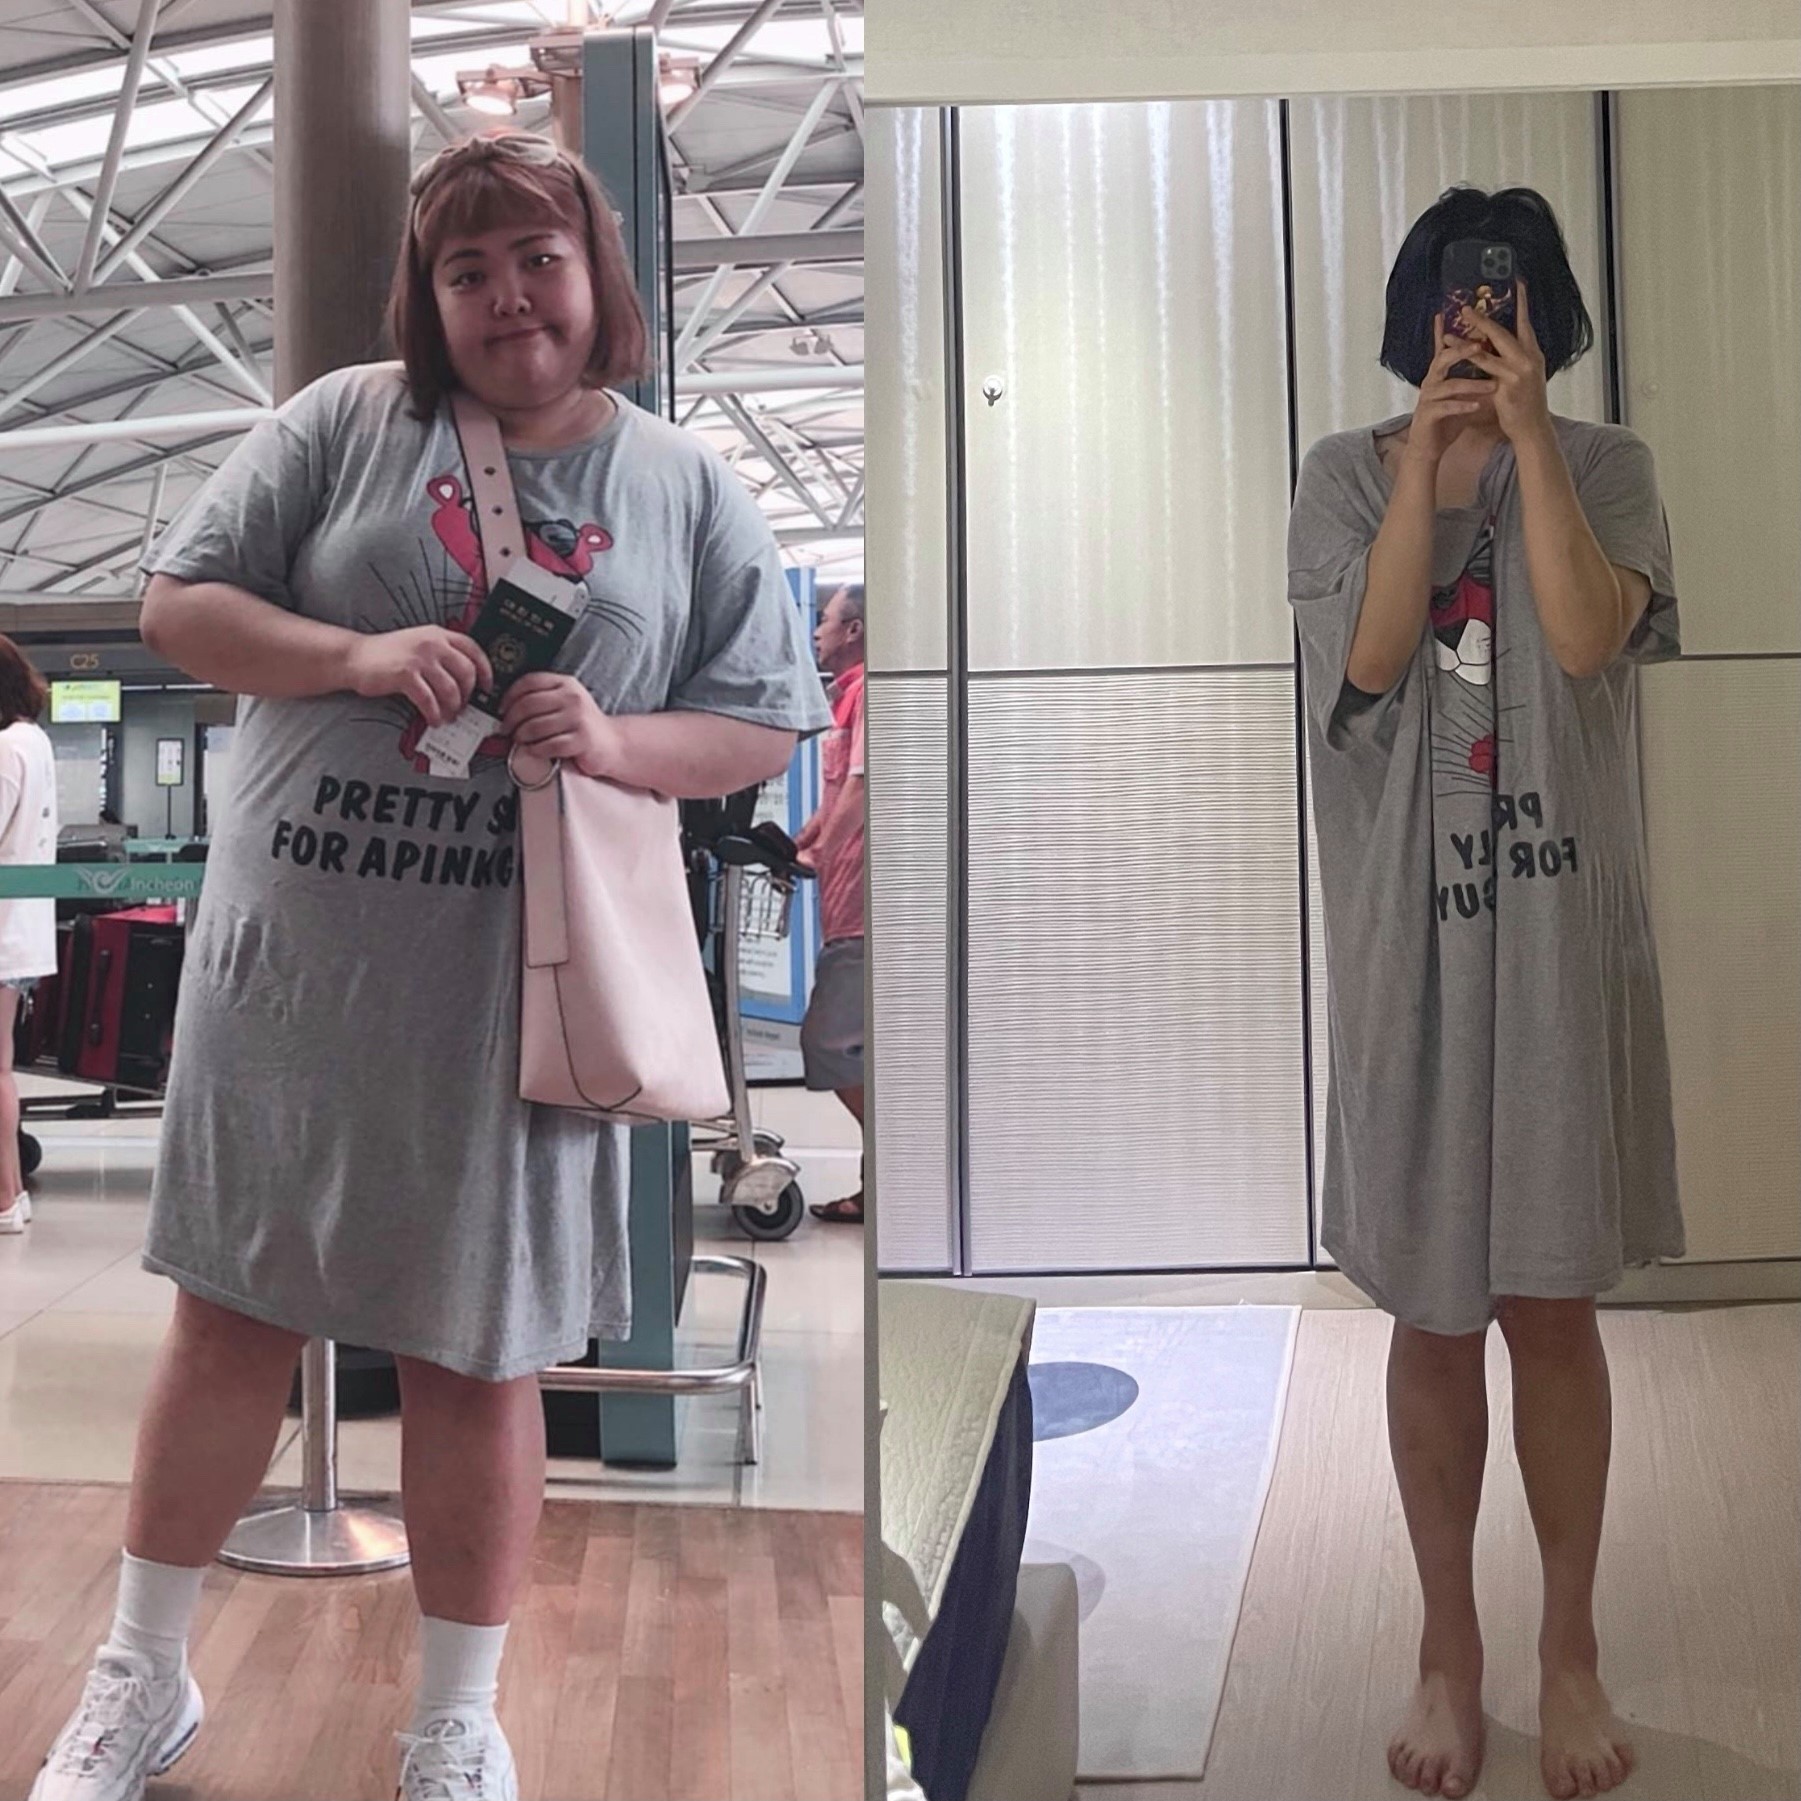 Thánh ăn Yang Soo Bin kỷ niệm màn giảm cân 2 năm bằng 1 tấm ảnh gây bão MXH, body thay đổi chóng mặt ai cũng sốc - Ảnh 1.